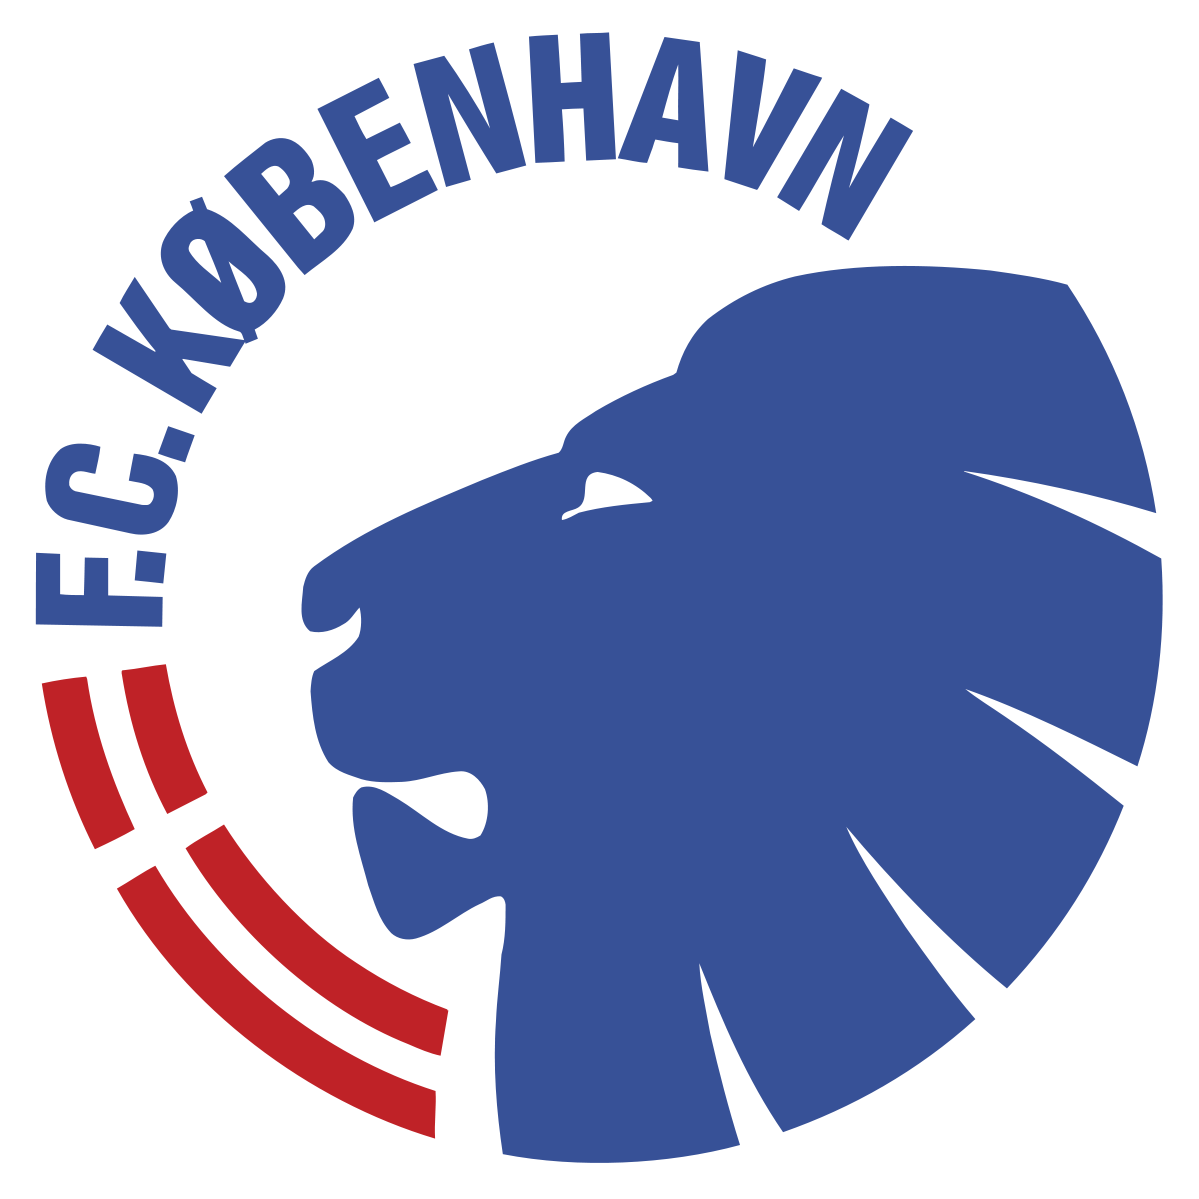 FC Köpenhamn